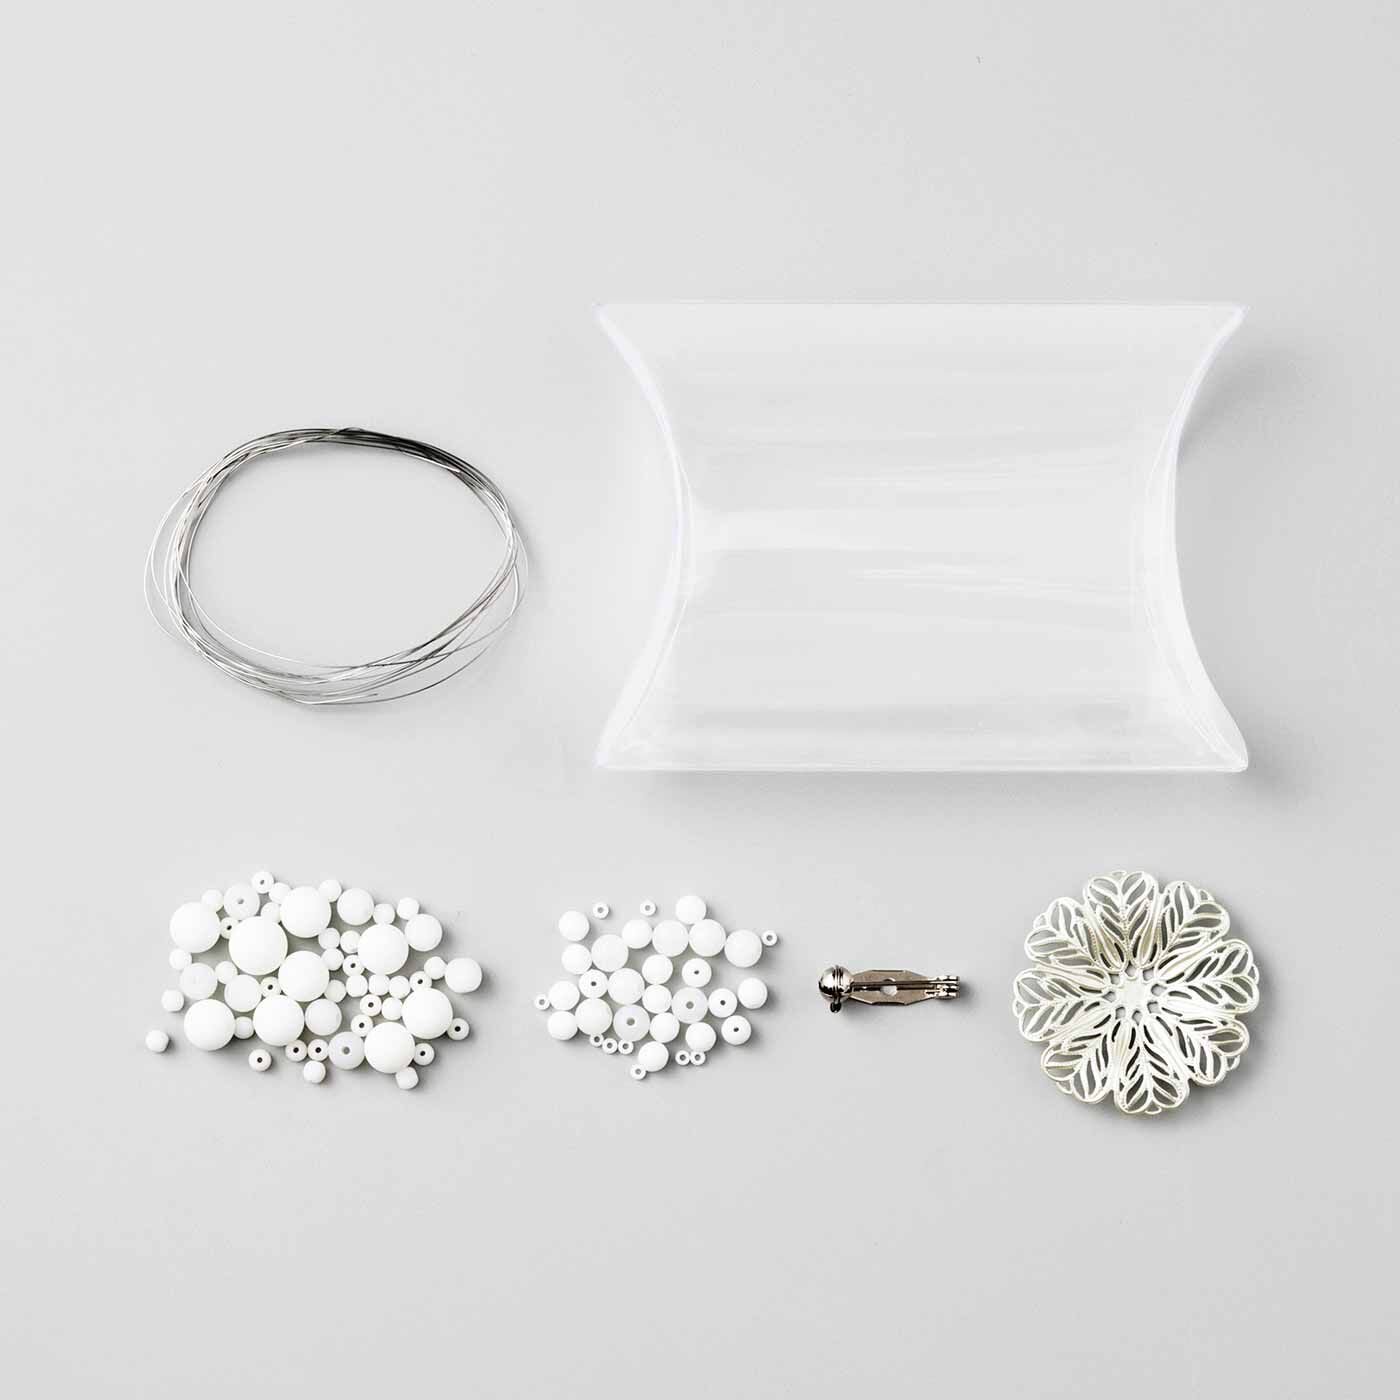 SeeMONO|松若硝子真珠工業所さんと作った ビーズブローチキットの会|・1回のお届けキット例です。